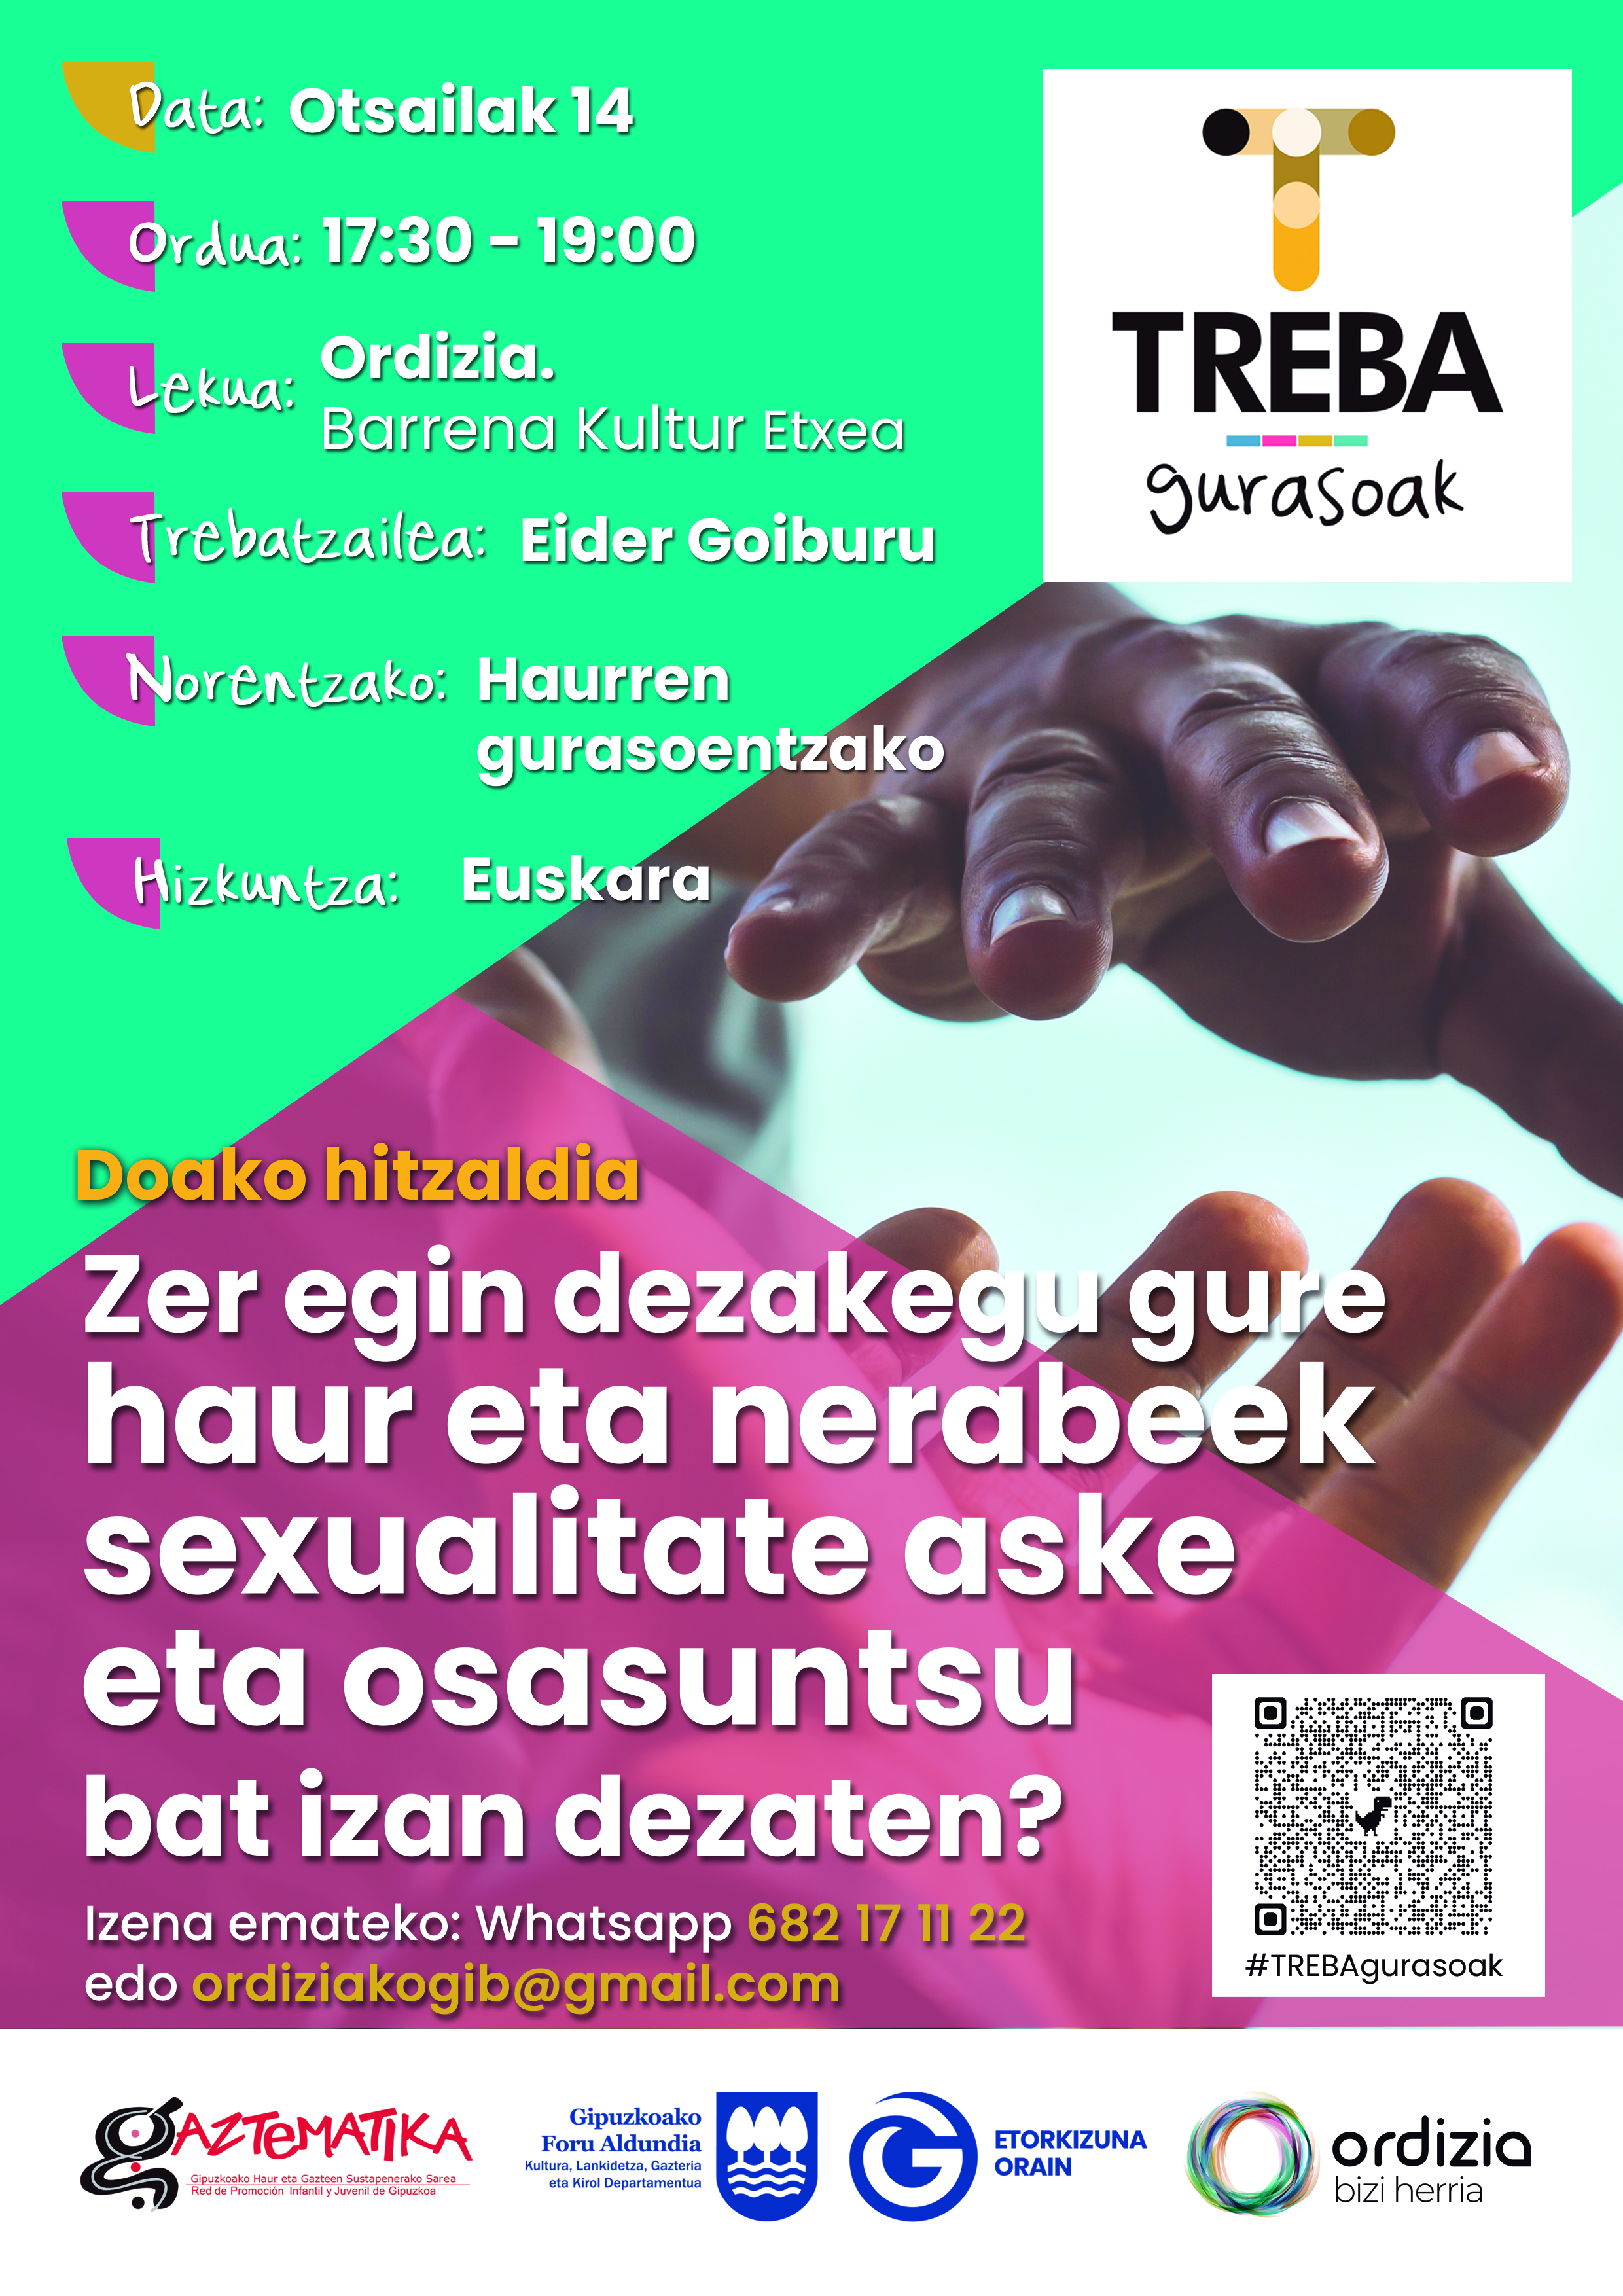 Sexkuntza: talleres informativos sobre la sexualidad 